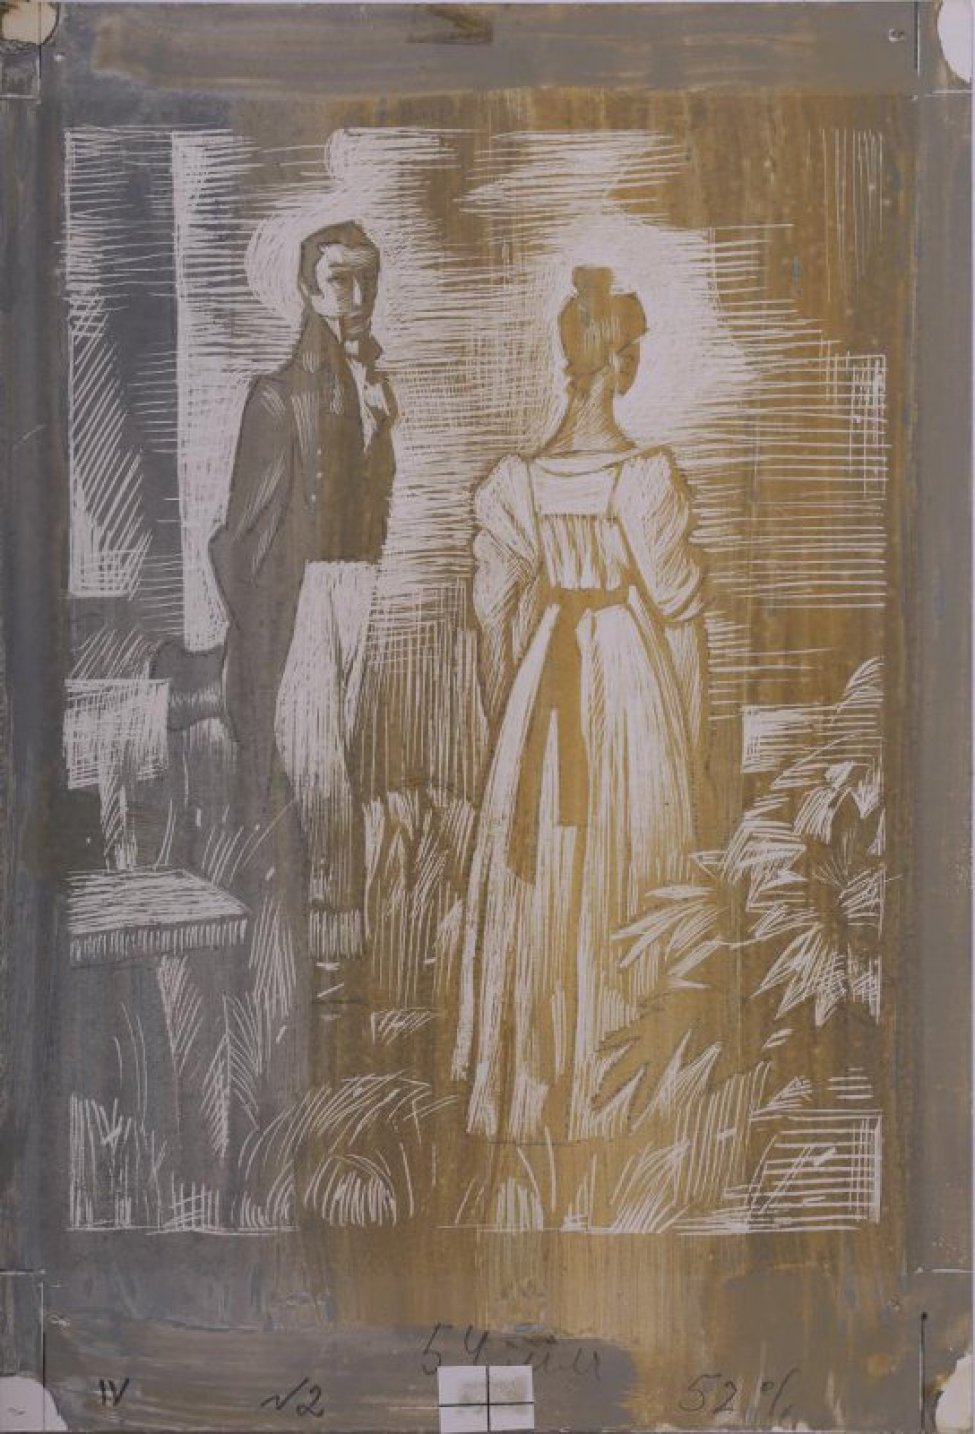 Справа изображена девушка со спины, рядом у скамейки - молодой человек с цилиндром в руках.